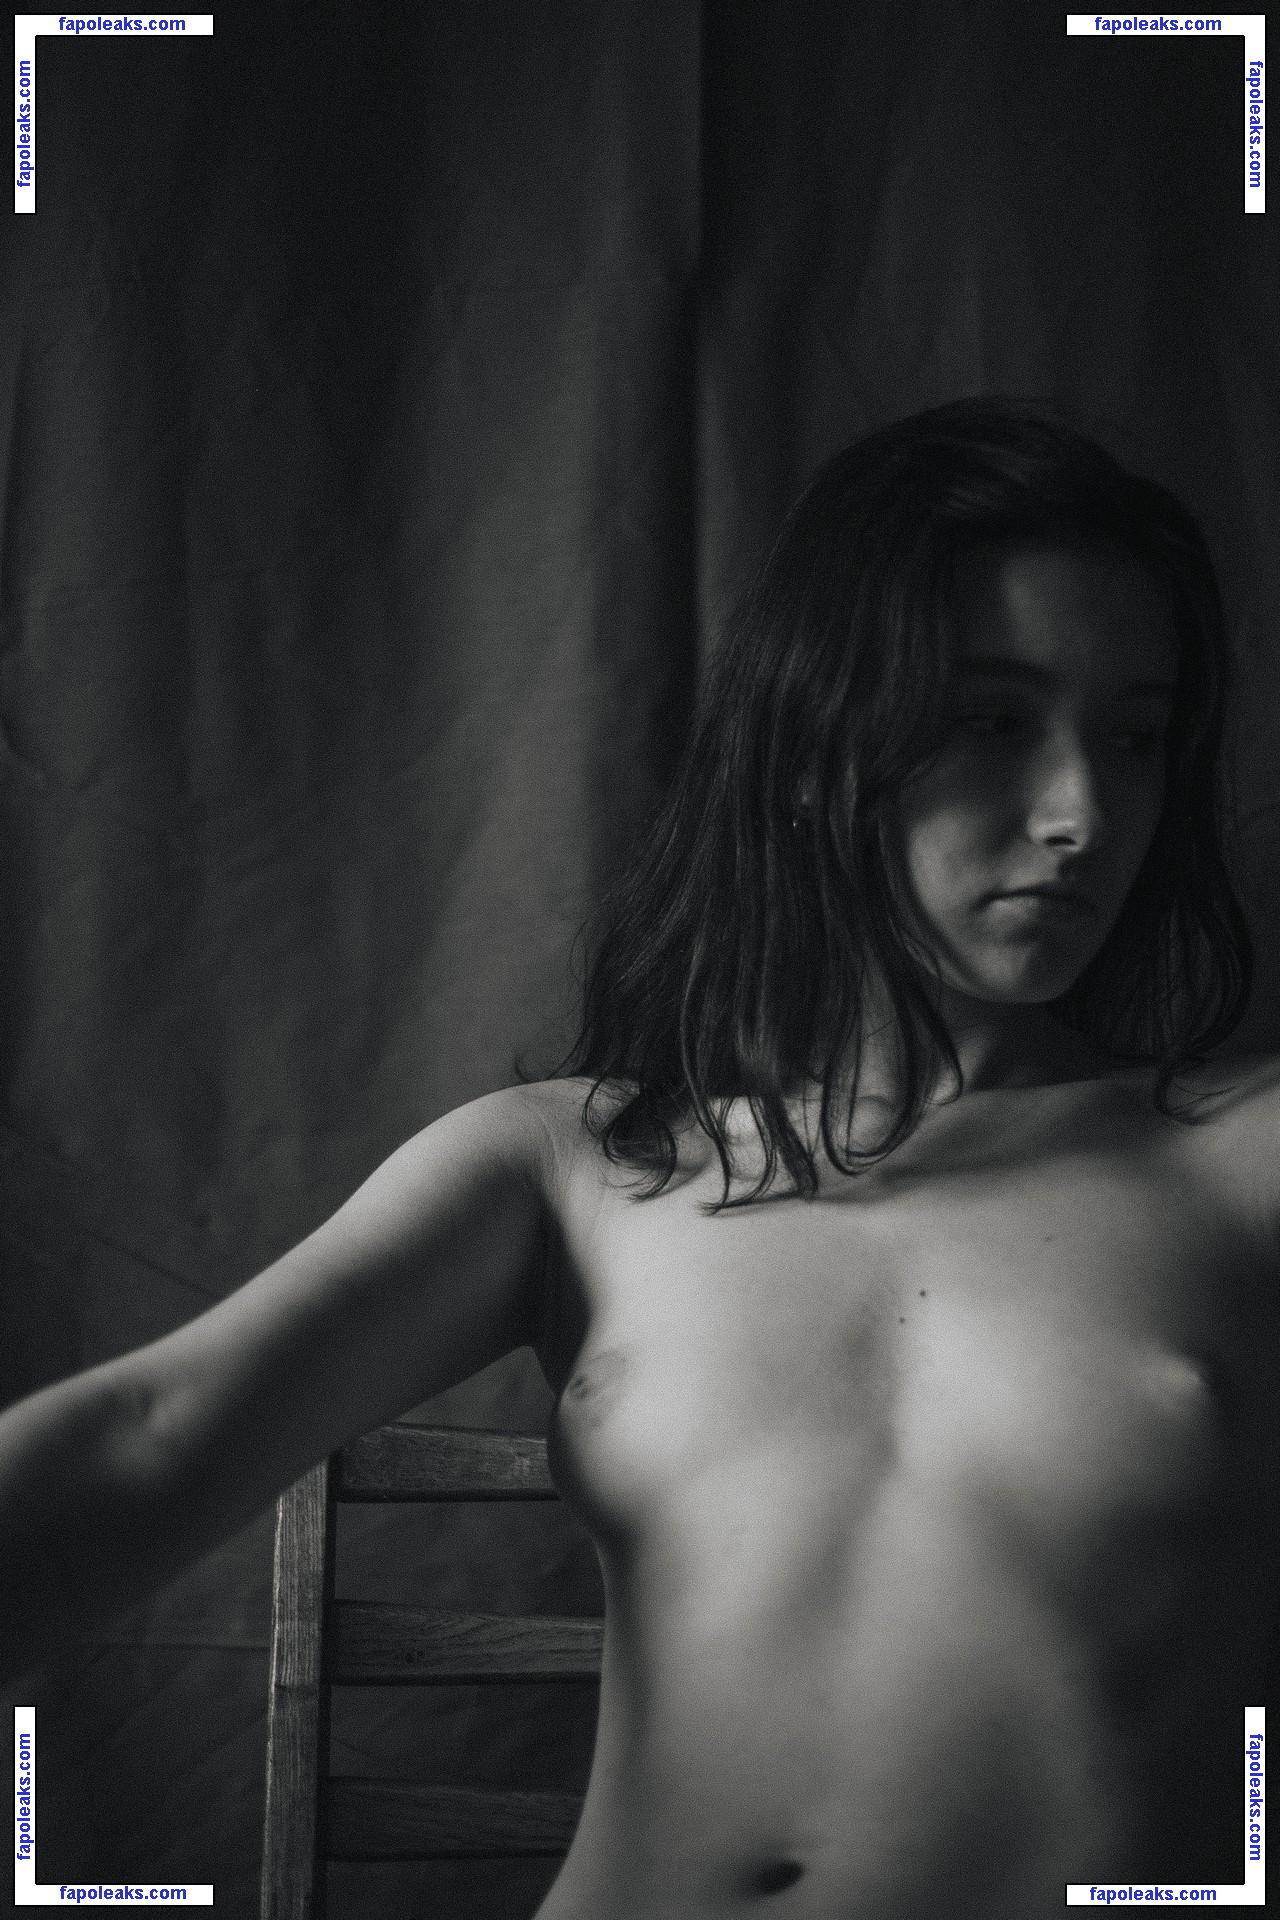 Valeria Shashenok / valeriahaver / valerisssh nude photo #0003 from OnlyFans